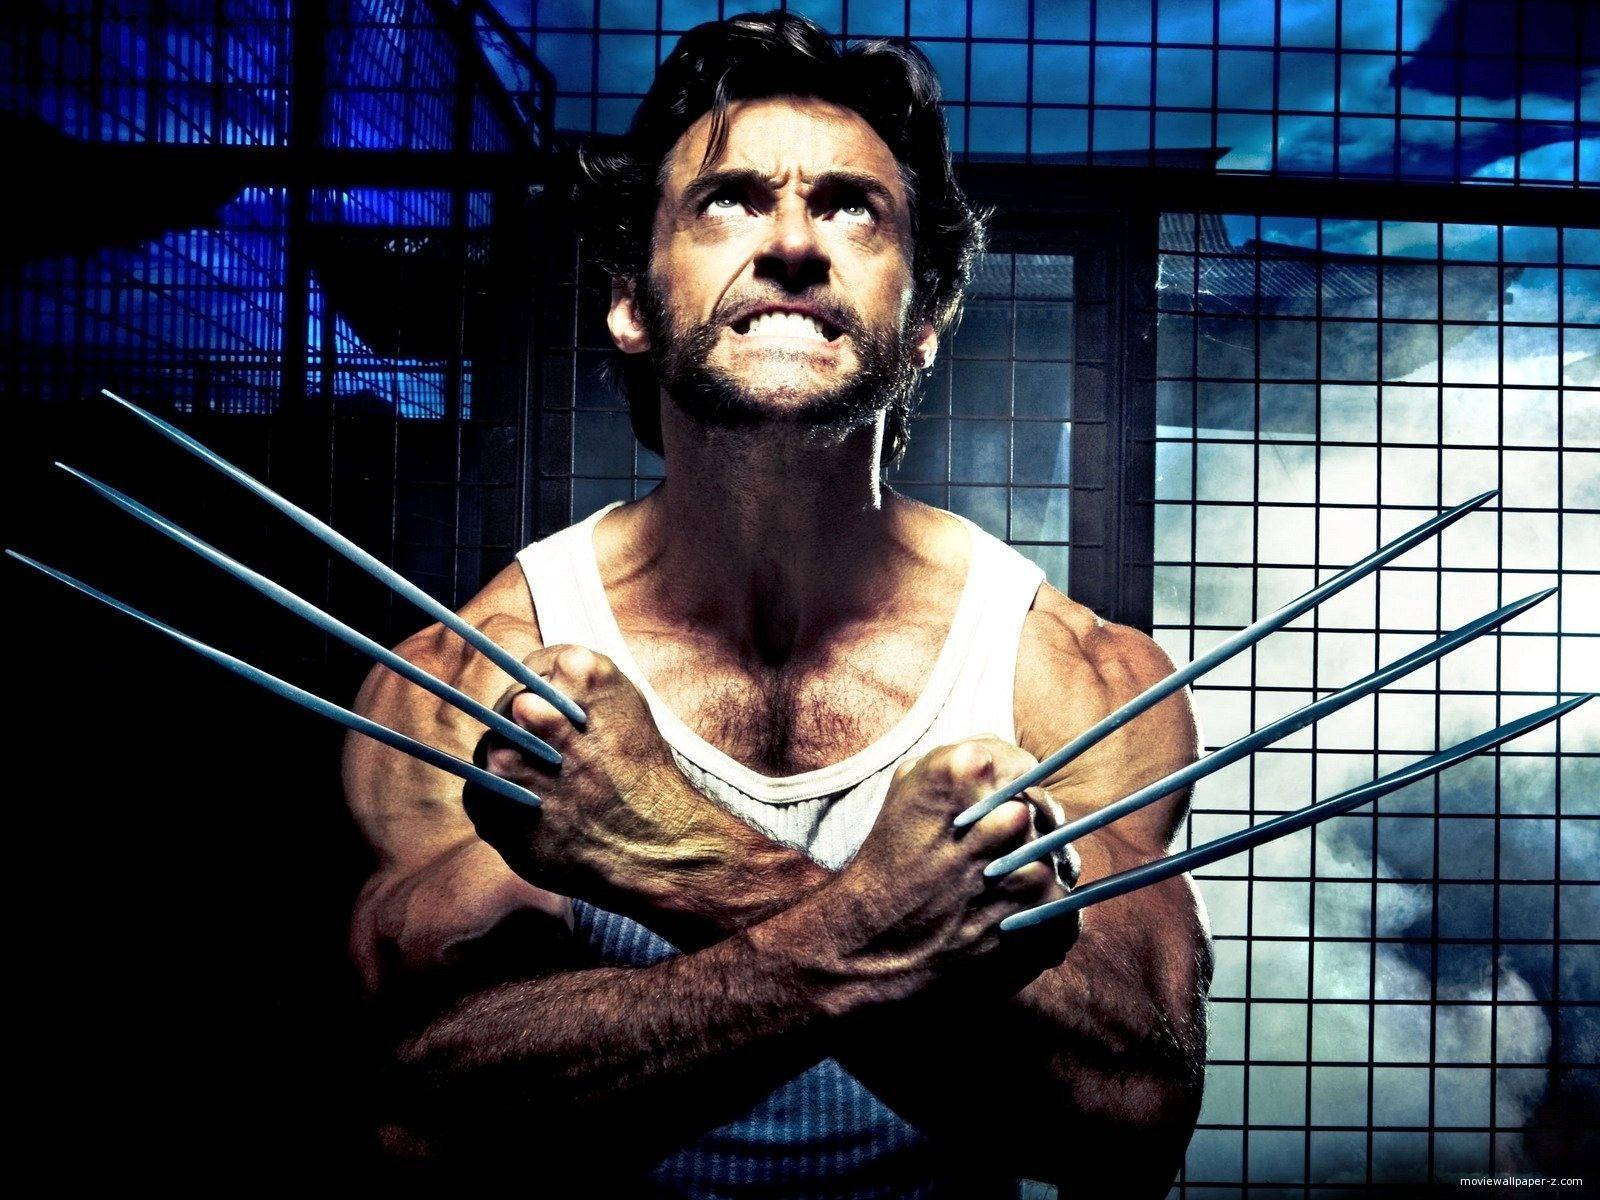 X-men Wolverine